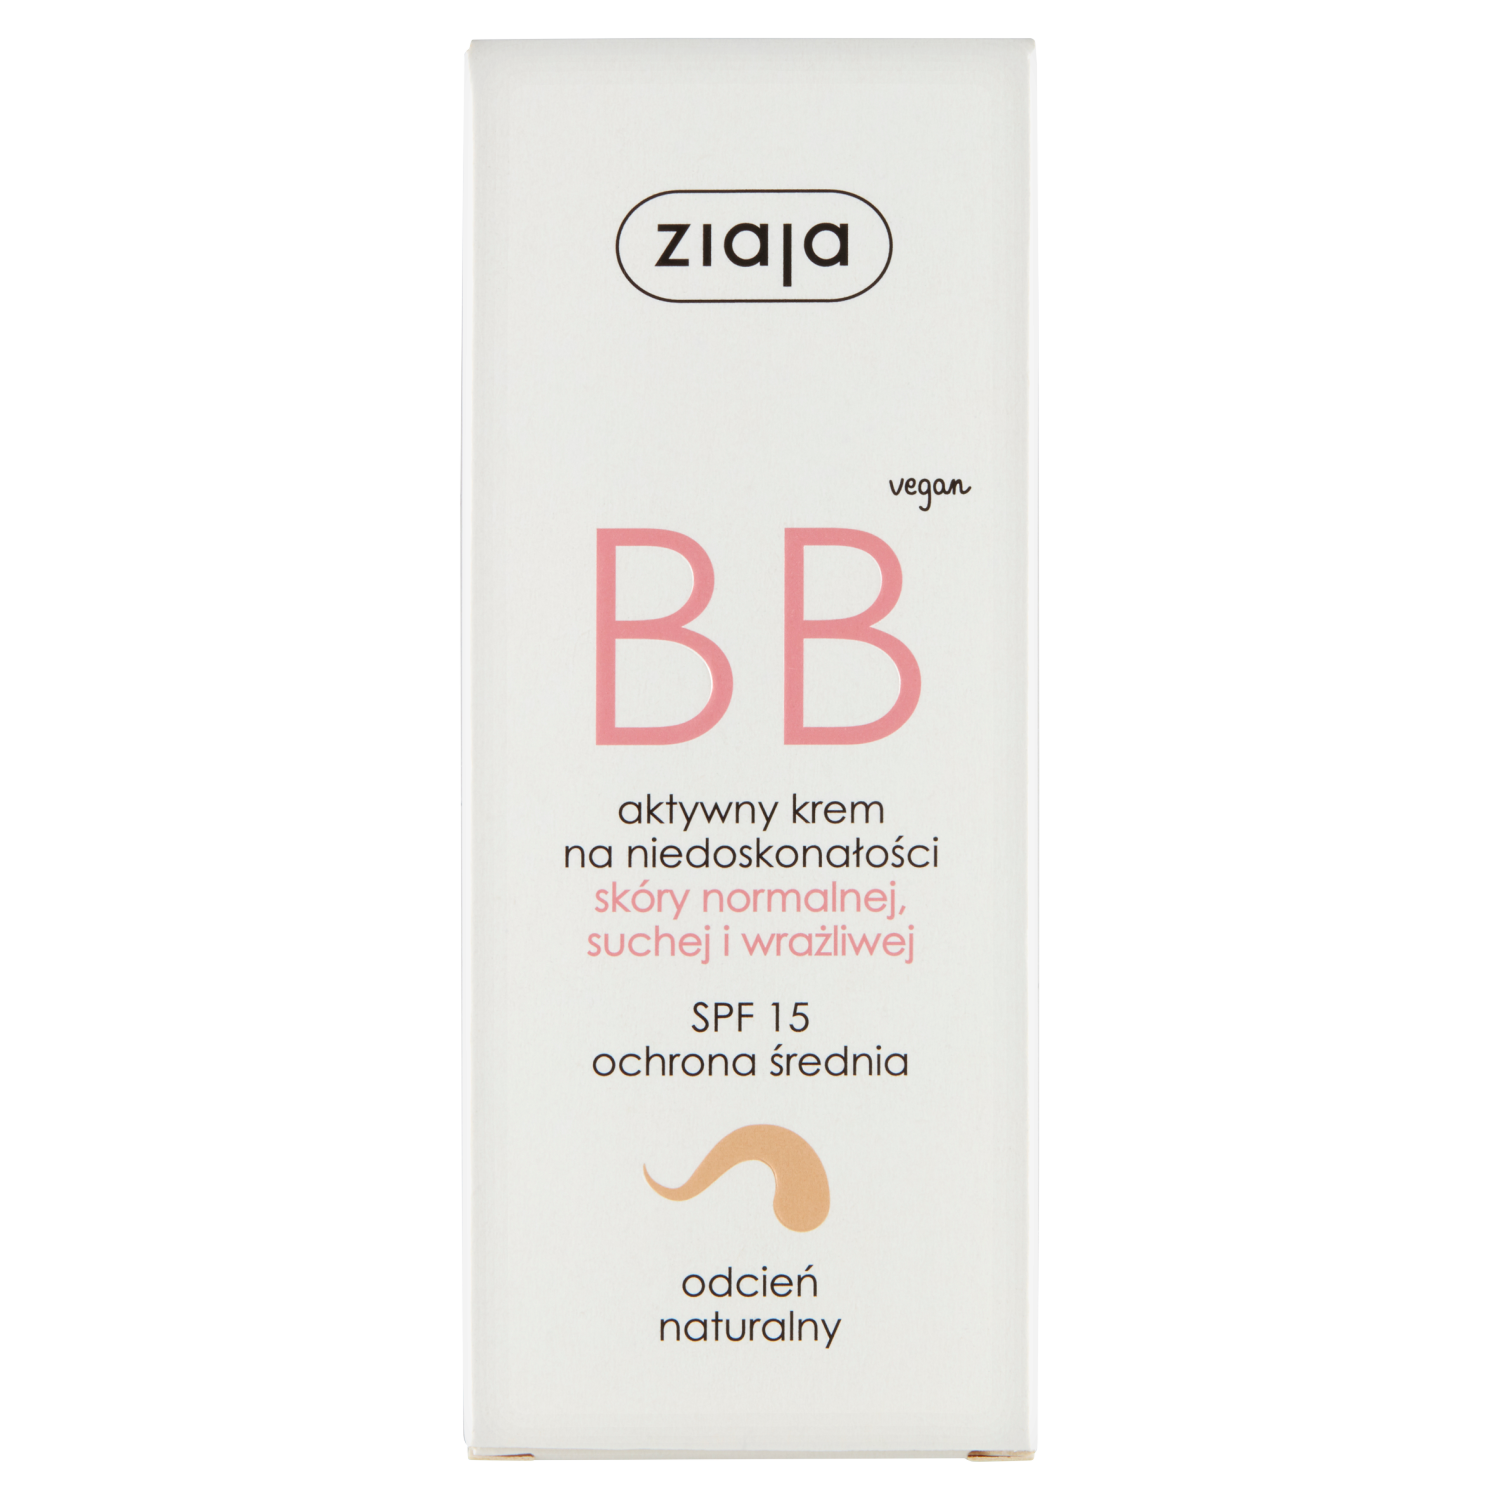 Ziaja BB активный крем для лица против несовершенств для нормальной и сухой кожи SPF15 натуральный, 50 мл